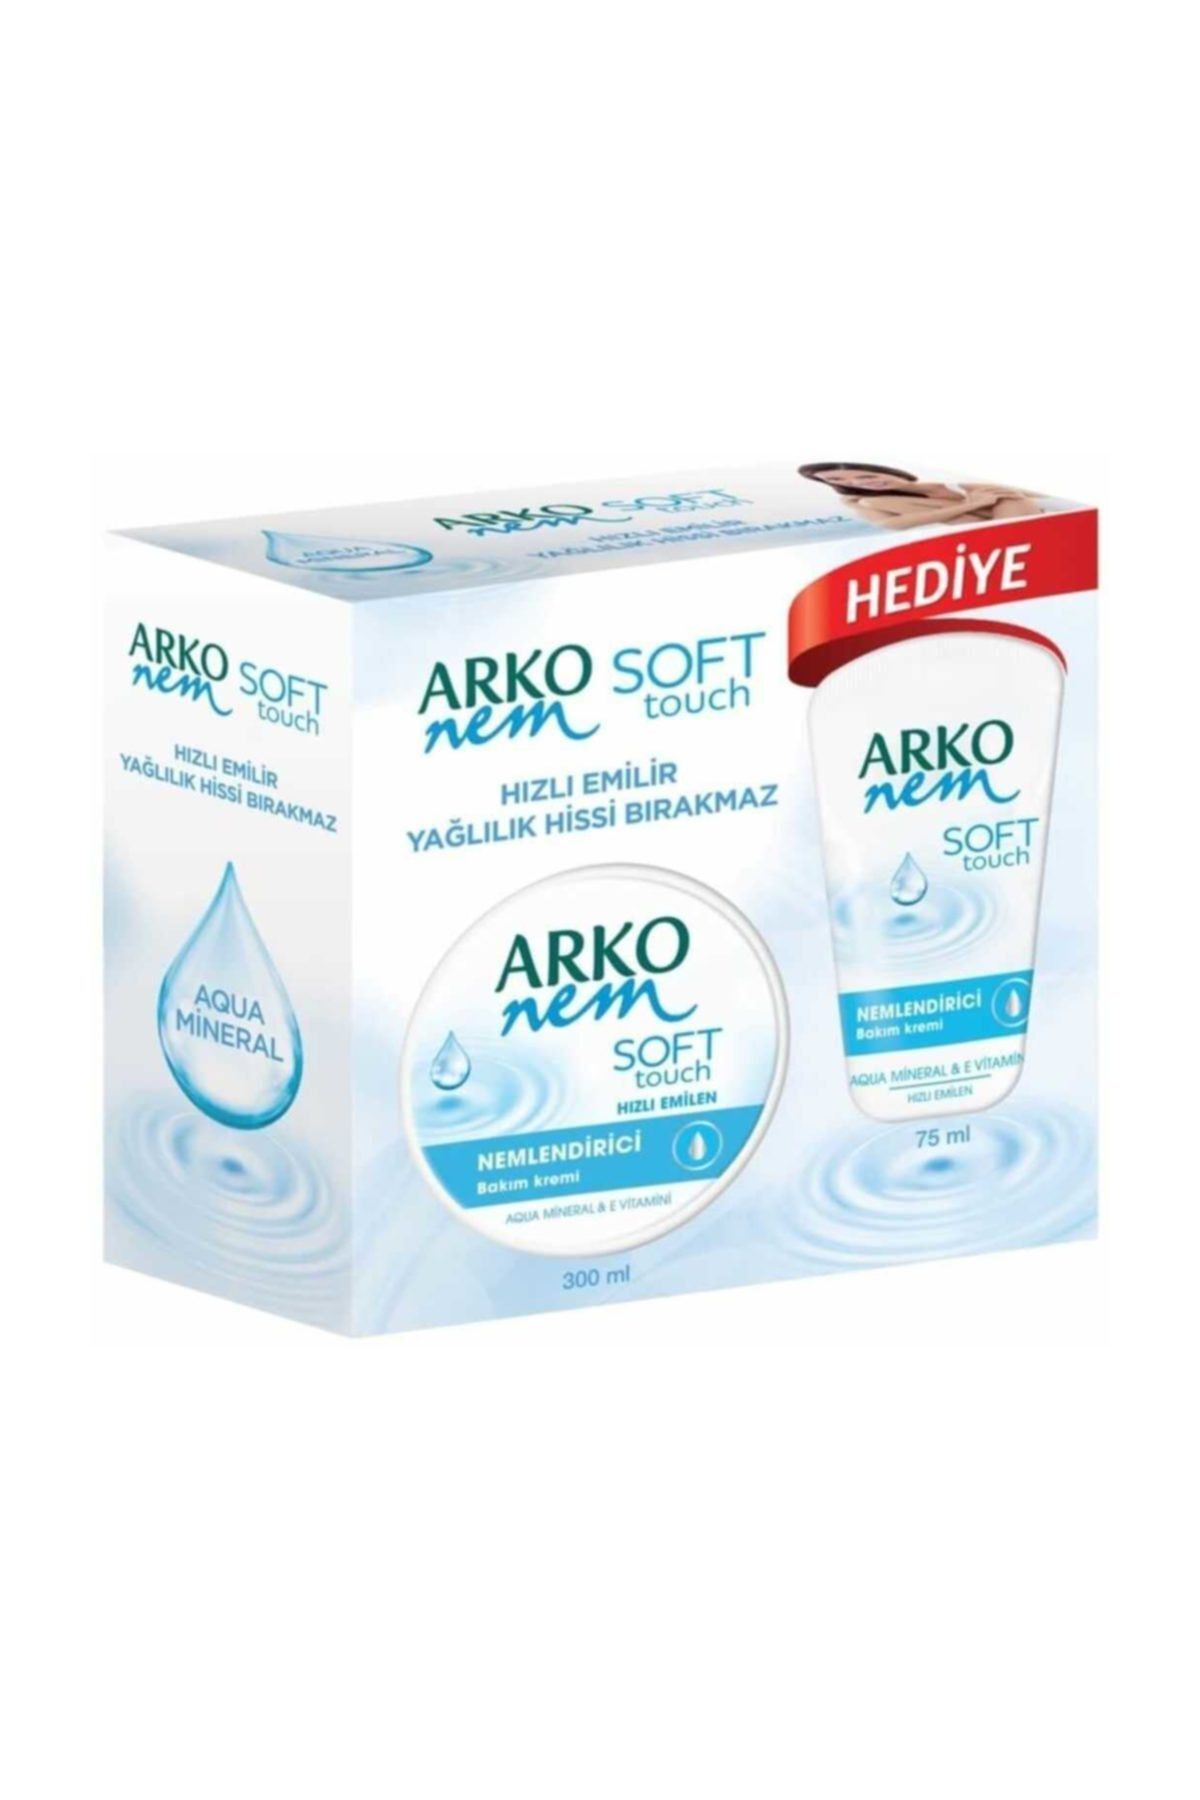 Arko Nem Soft Touch Bakım Kremi 300 ml   + 75 ml